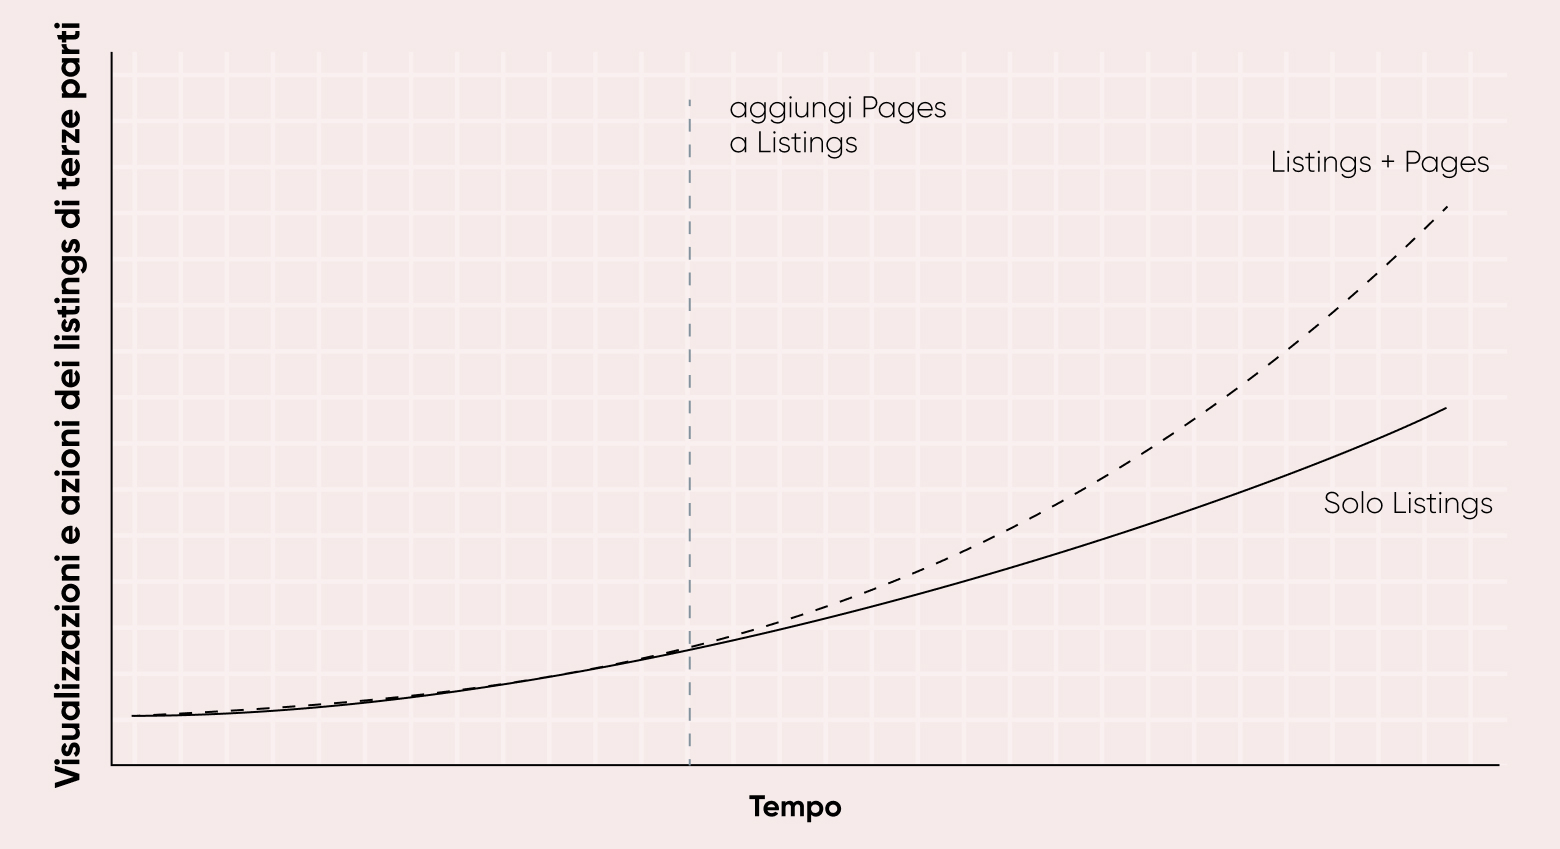 Grafico che mostra un aumento delle impressioni e delle azioni dei listing di terze parti nel tempo